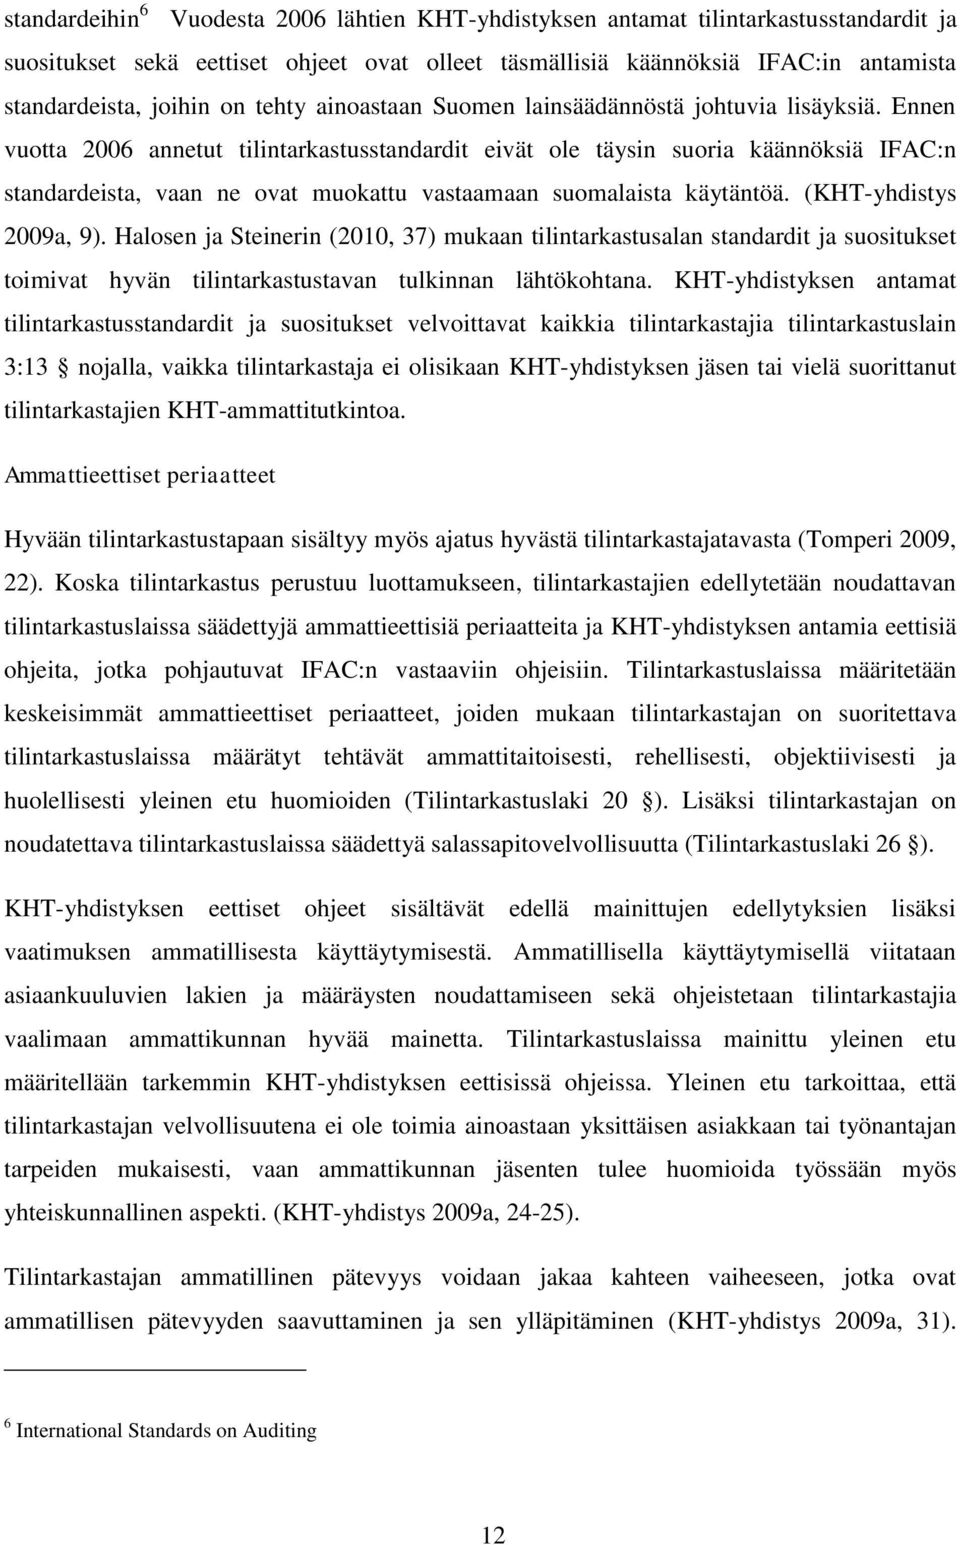 Ennen vuotta 2006 annetut tilintarkastusstandardit eivät ole täysin suoria käännöksiä IFAC:n standardeista, vaan ne ovat muokattu vastaamaan suomalaista käytäntöä. (KHT-yhdistys 2009a, 9).